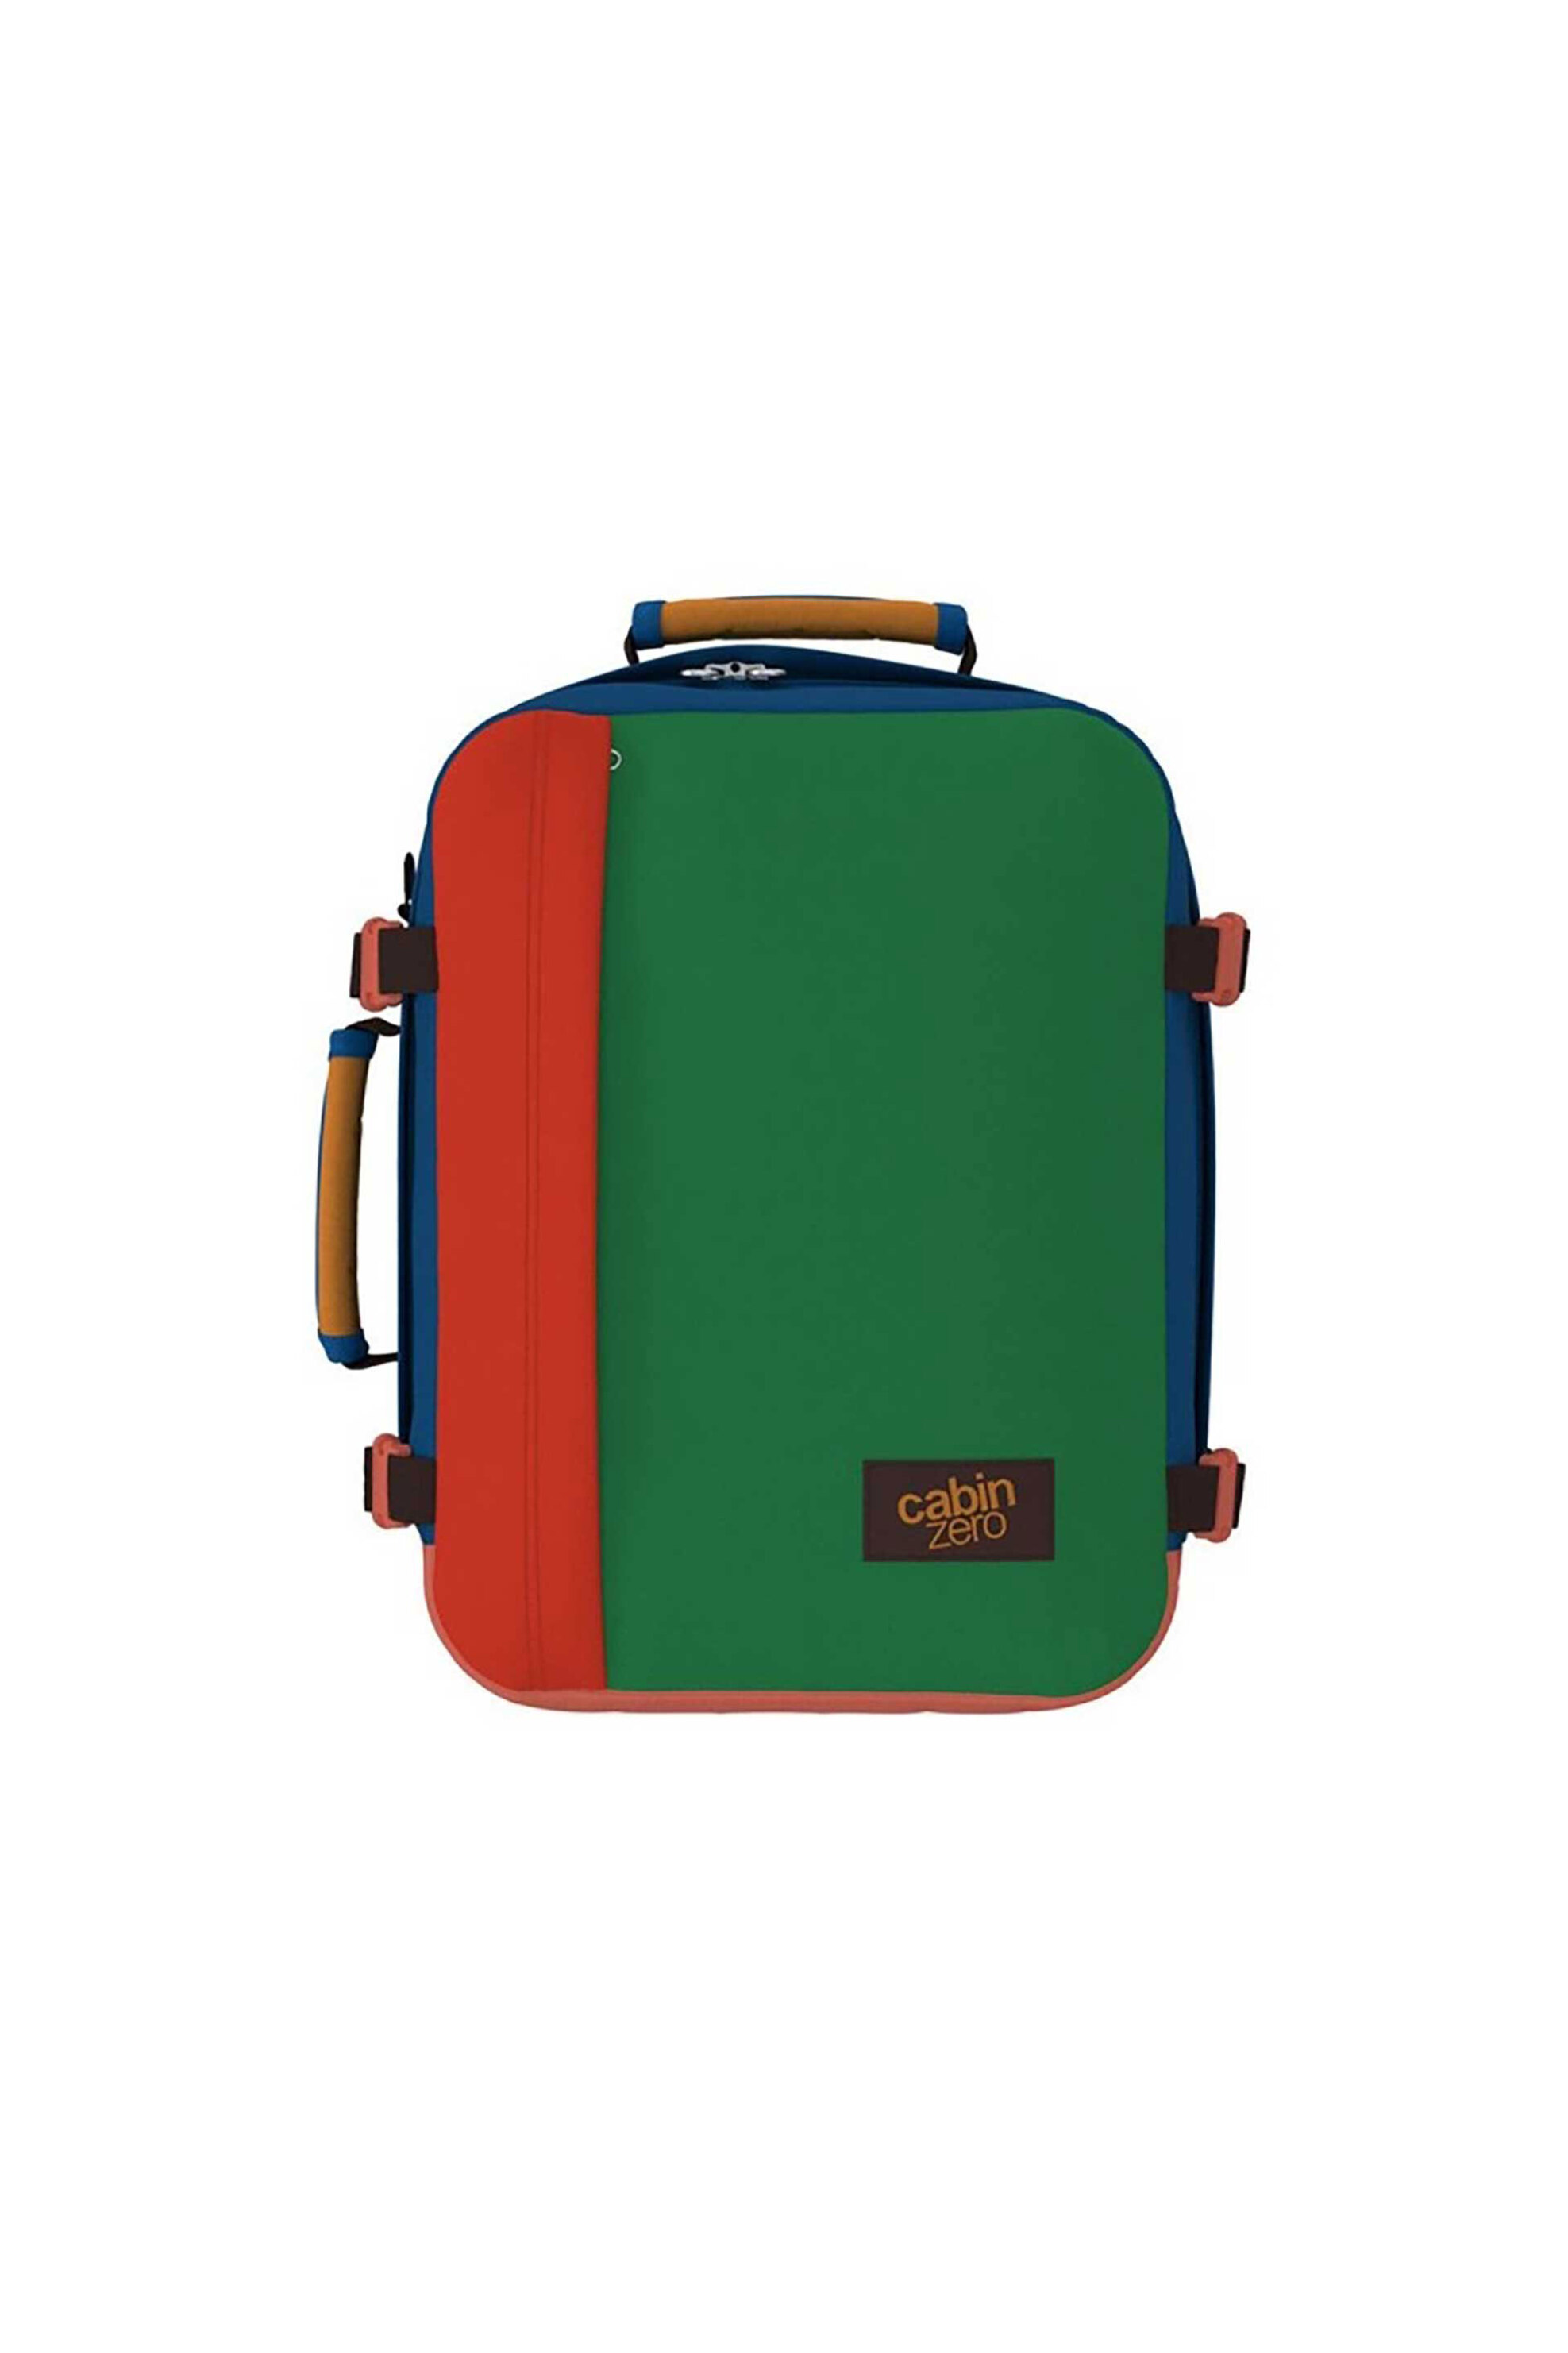 Ανδρική Μόδα > Ανδρικές Τσάντες > Ανδρικά Σακίδια & Backpacks Cabin Zero unisex backpack 39 x 29,5 x 20 cm "Travel Classic Tropical Blocks" - CZ082308